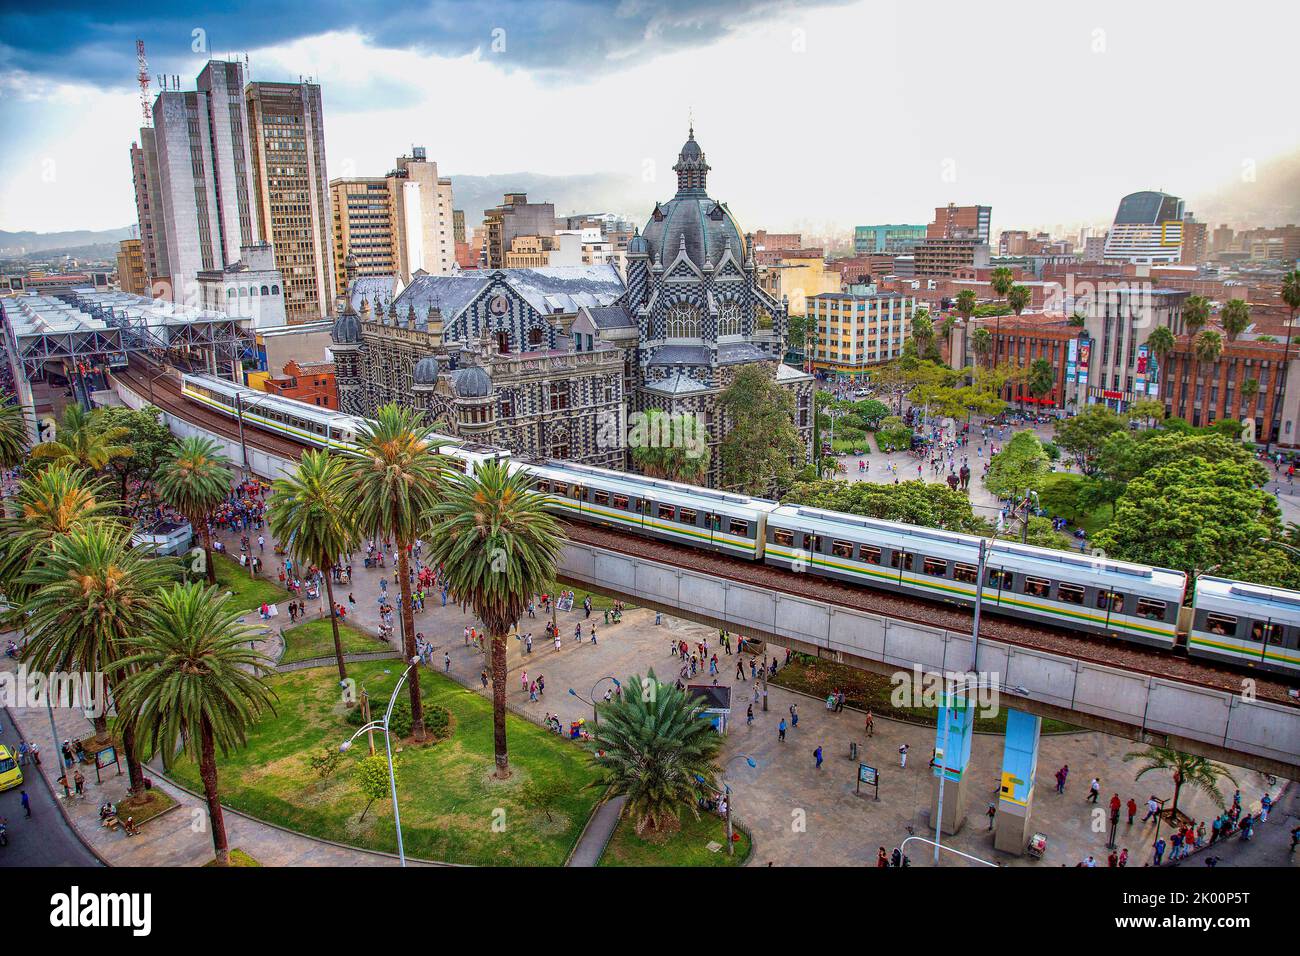 Colombia, Medellin, metroline in front of Plaza Botero and the Palacio de la Cultura Rafael Uribe Uribe. Stock Photo